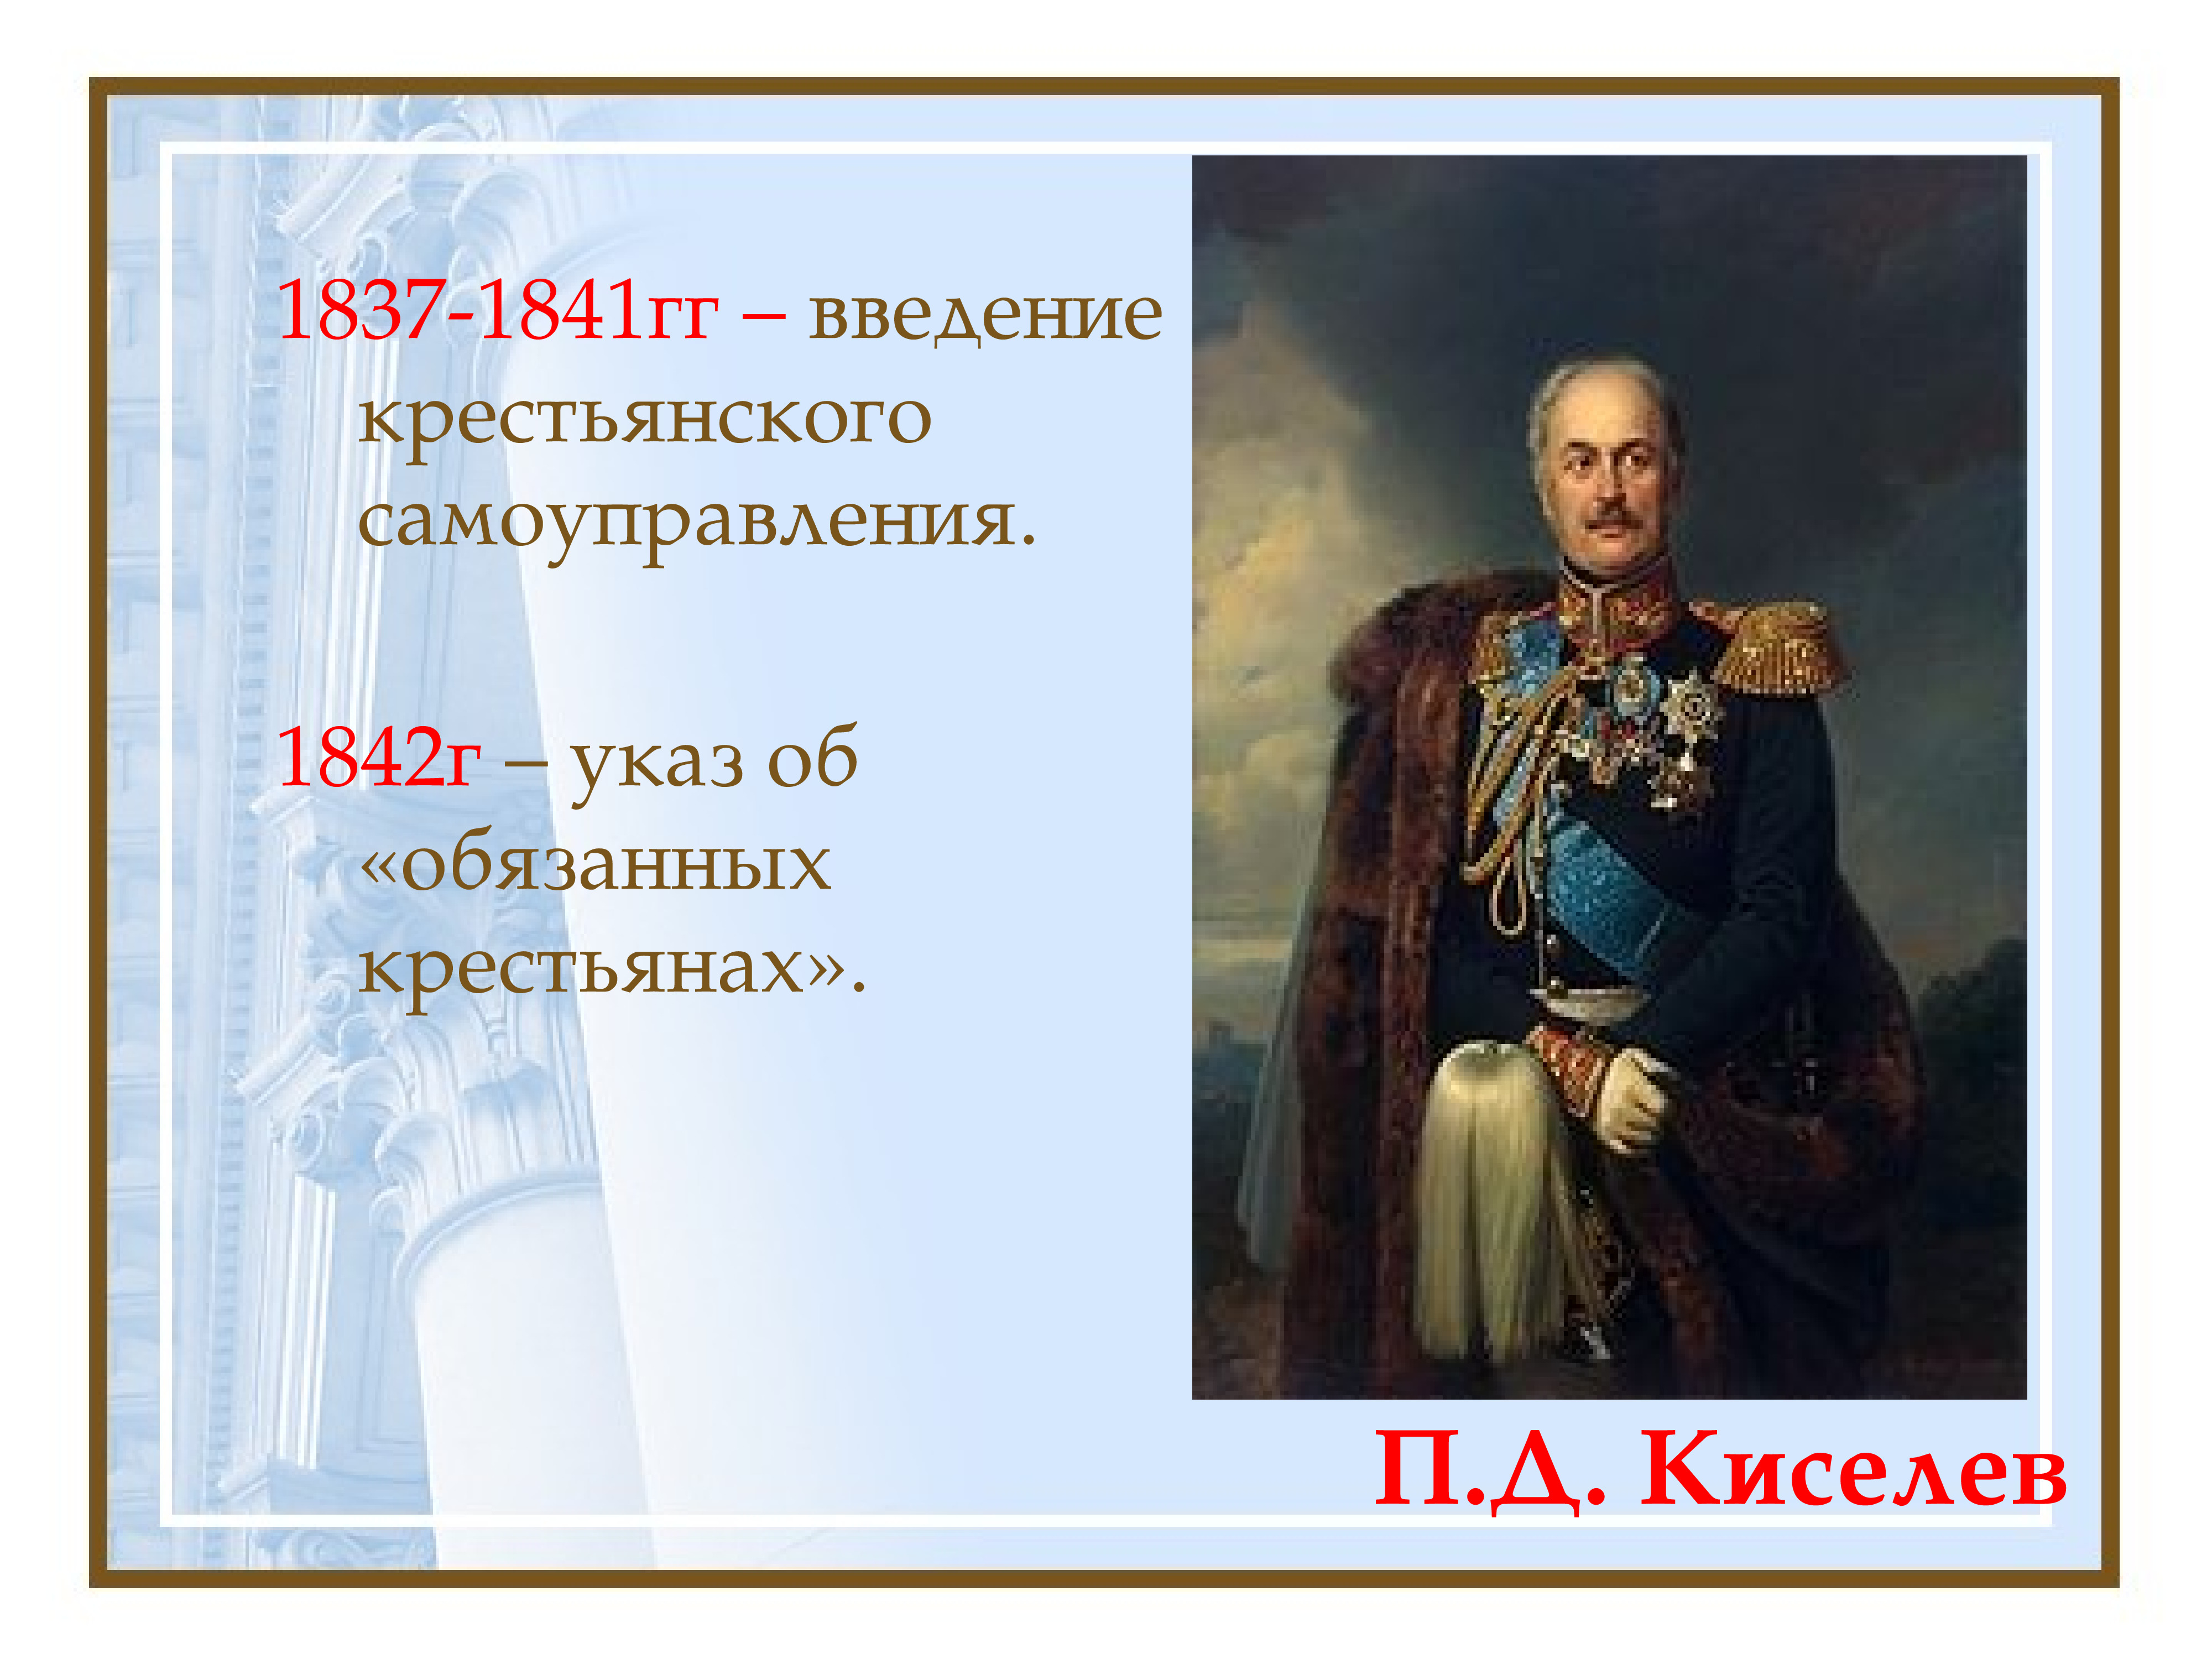 Указ 1842 г. Реформа п.д. Киселева (1837–1841).